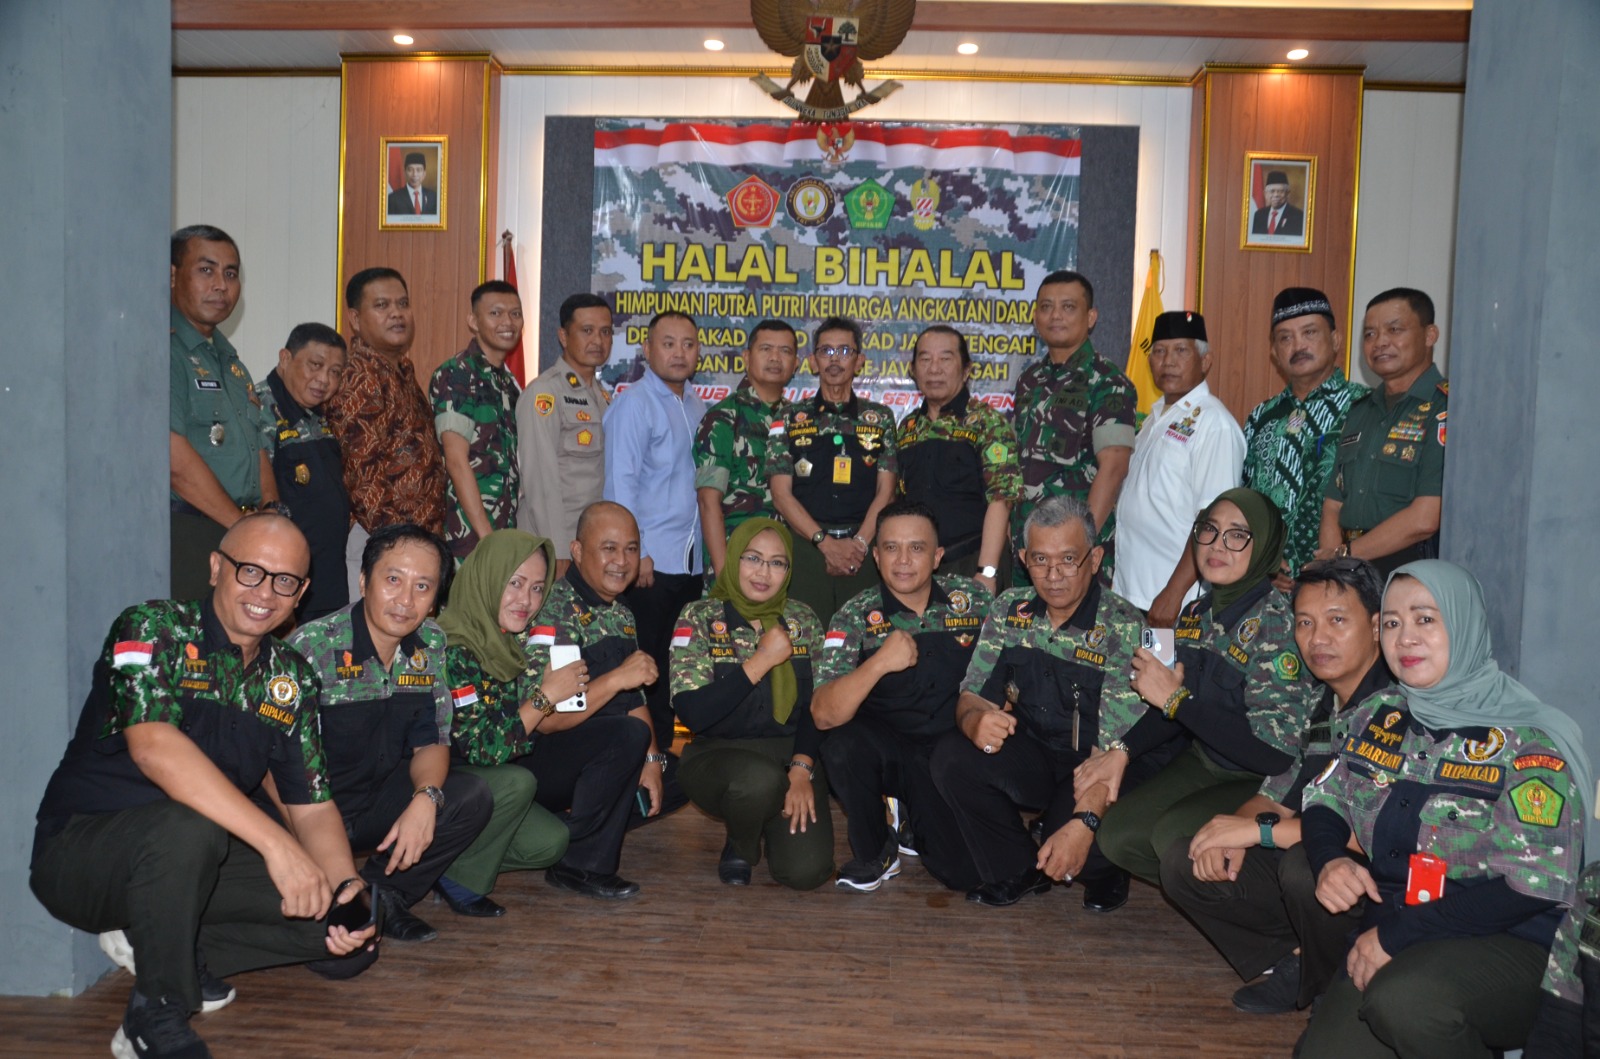 Halal Bihalal Hipakad Jateng, DPP Dan DPC Se-Jateng Berkomitmen Menumbuhkan Semangat Patriotisme & Soliditas Bagi Anggota Dan Masyarakat